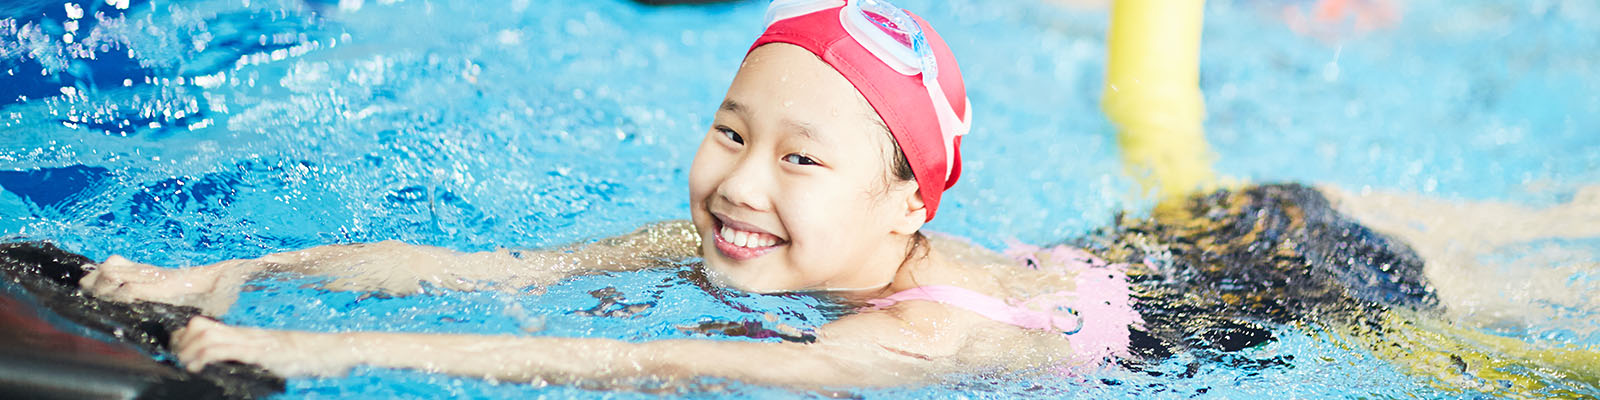 A girl enjoying swimming at summer camps